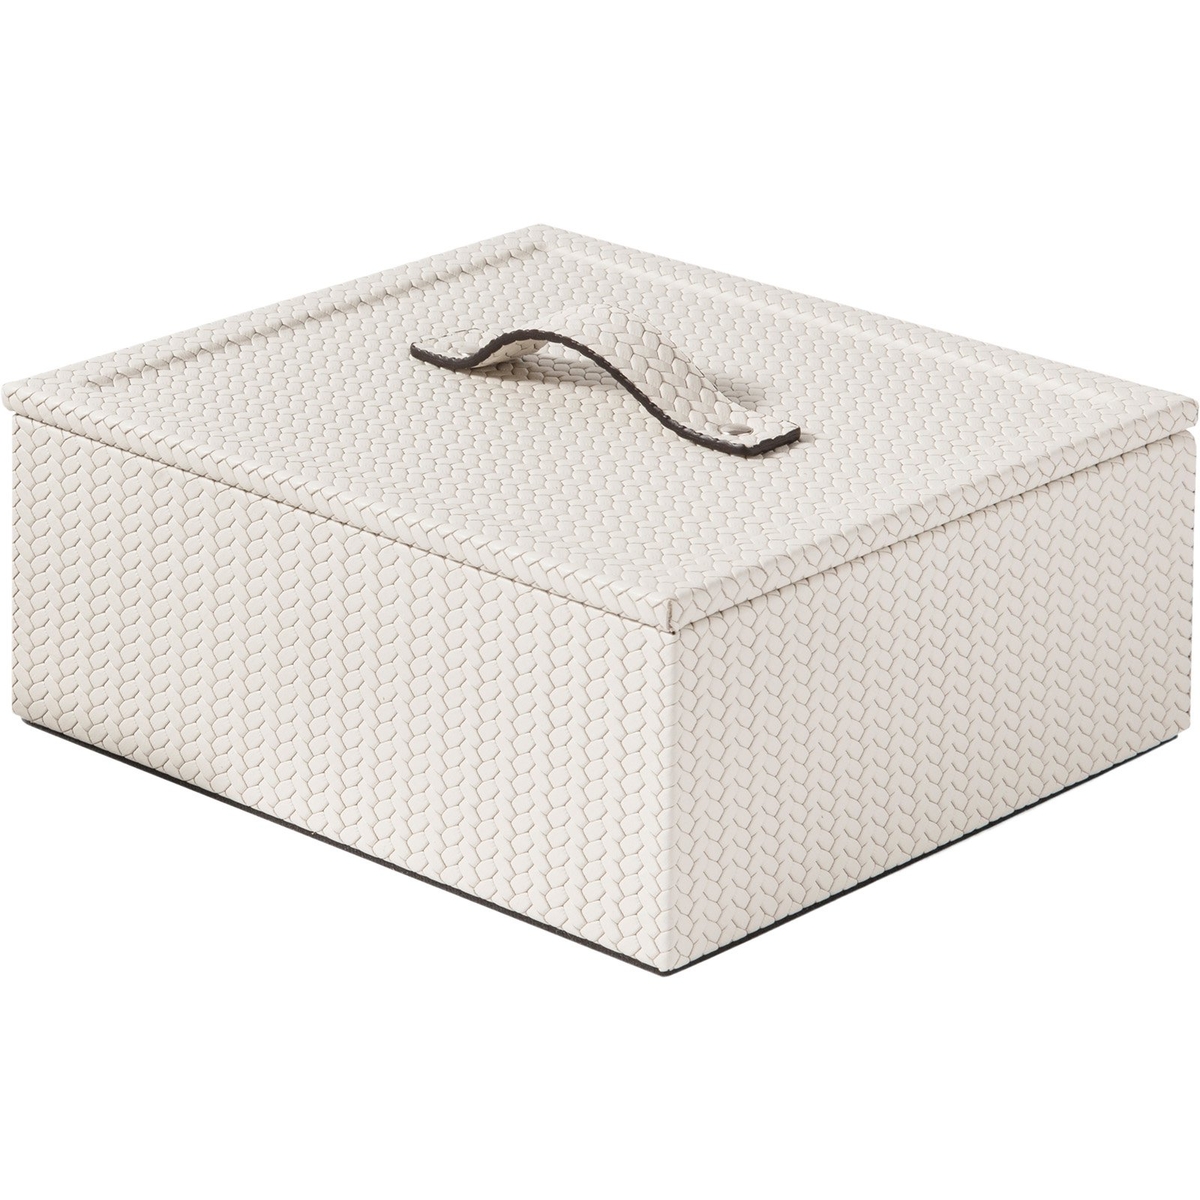 Mati Square Box, Cream